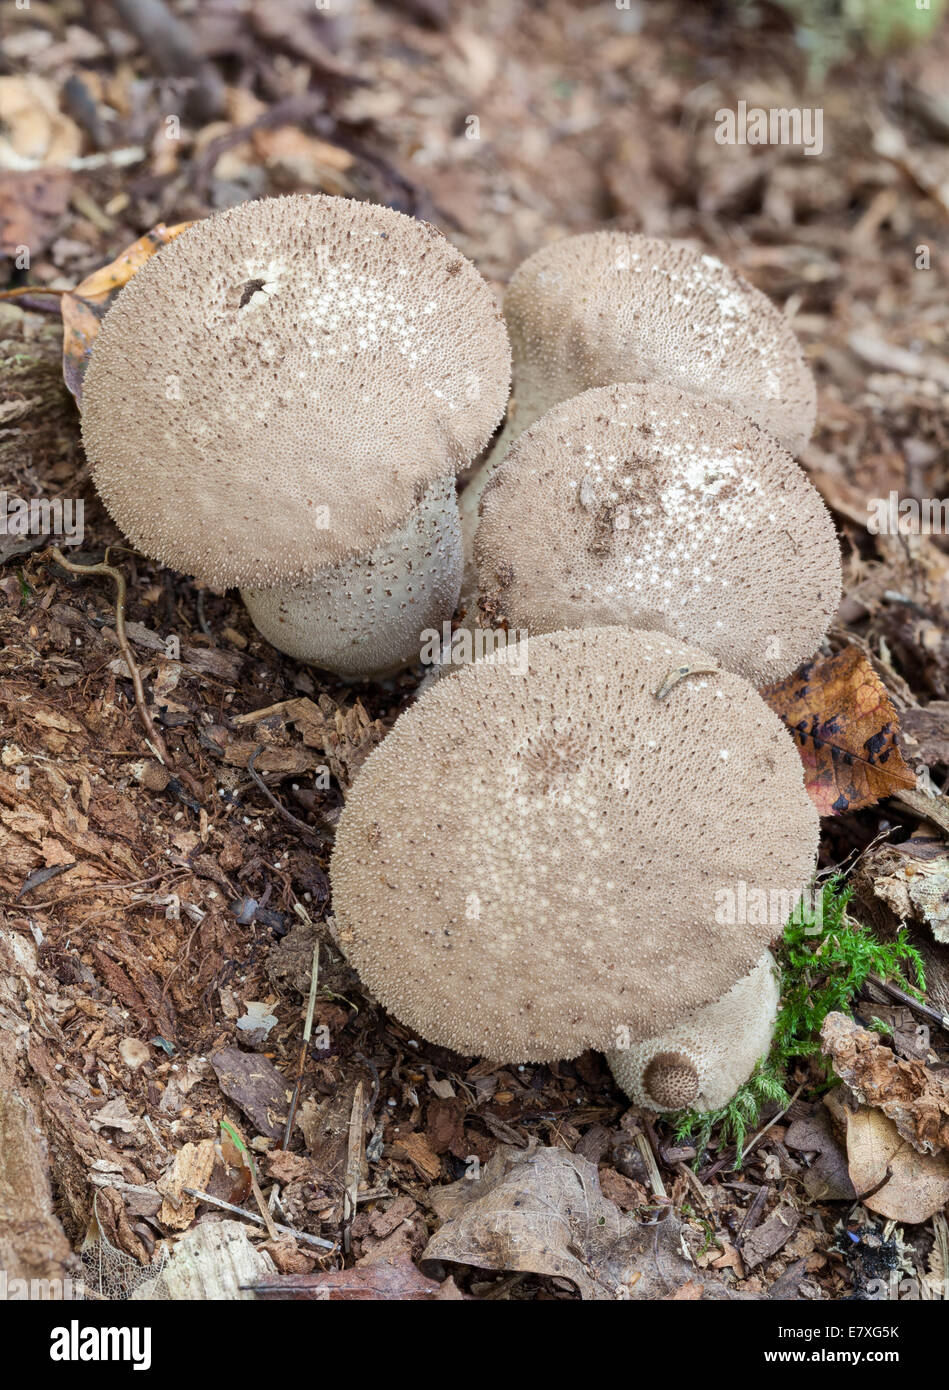 Common puffball mushrooms Stock Photo